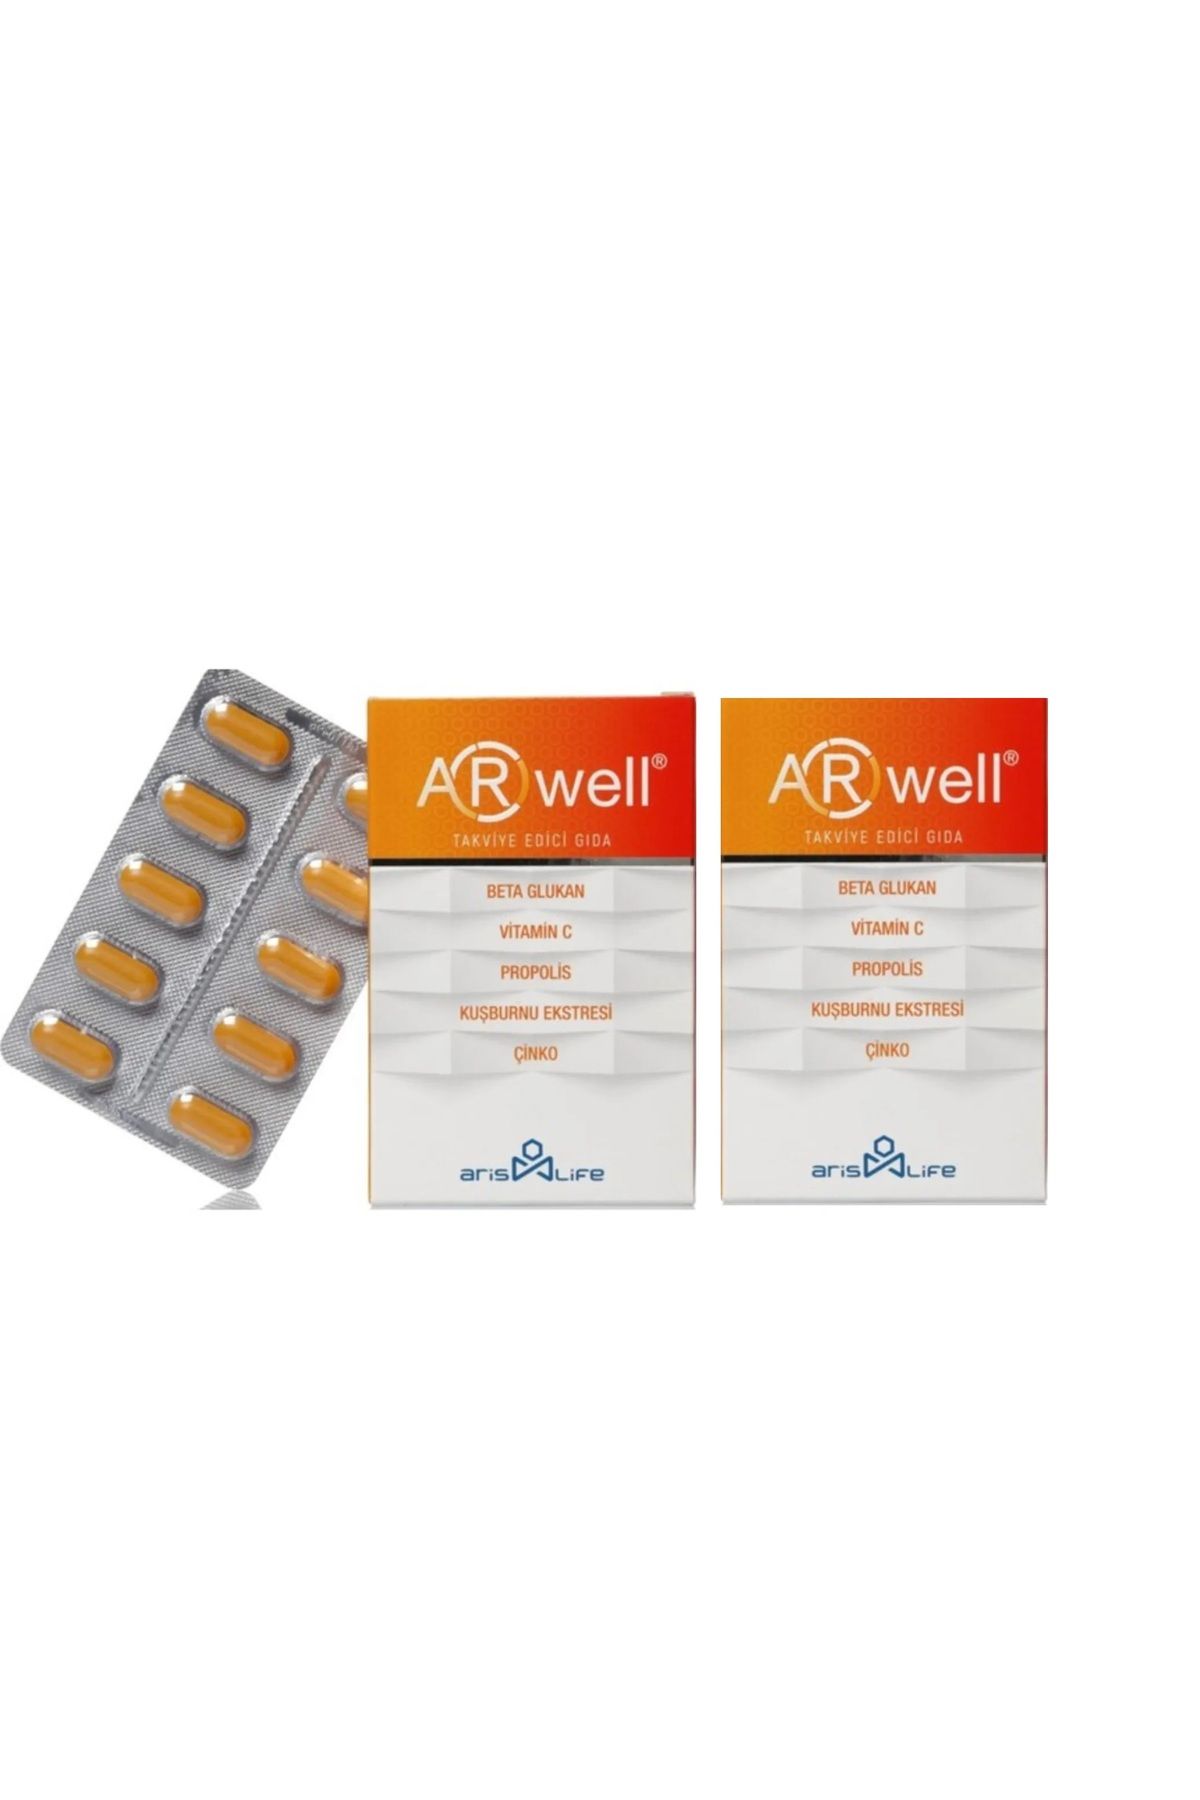 Arwell 2 Kutu Beta Glukan - Propolis - Vitamin C - Çinko Içeren Takviye Edici Gıda 200 Mg